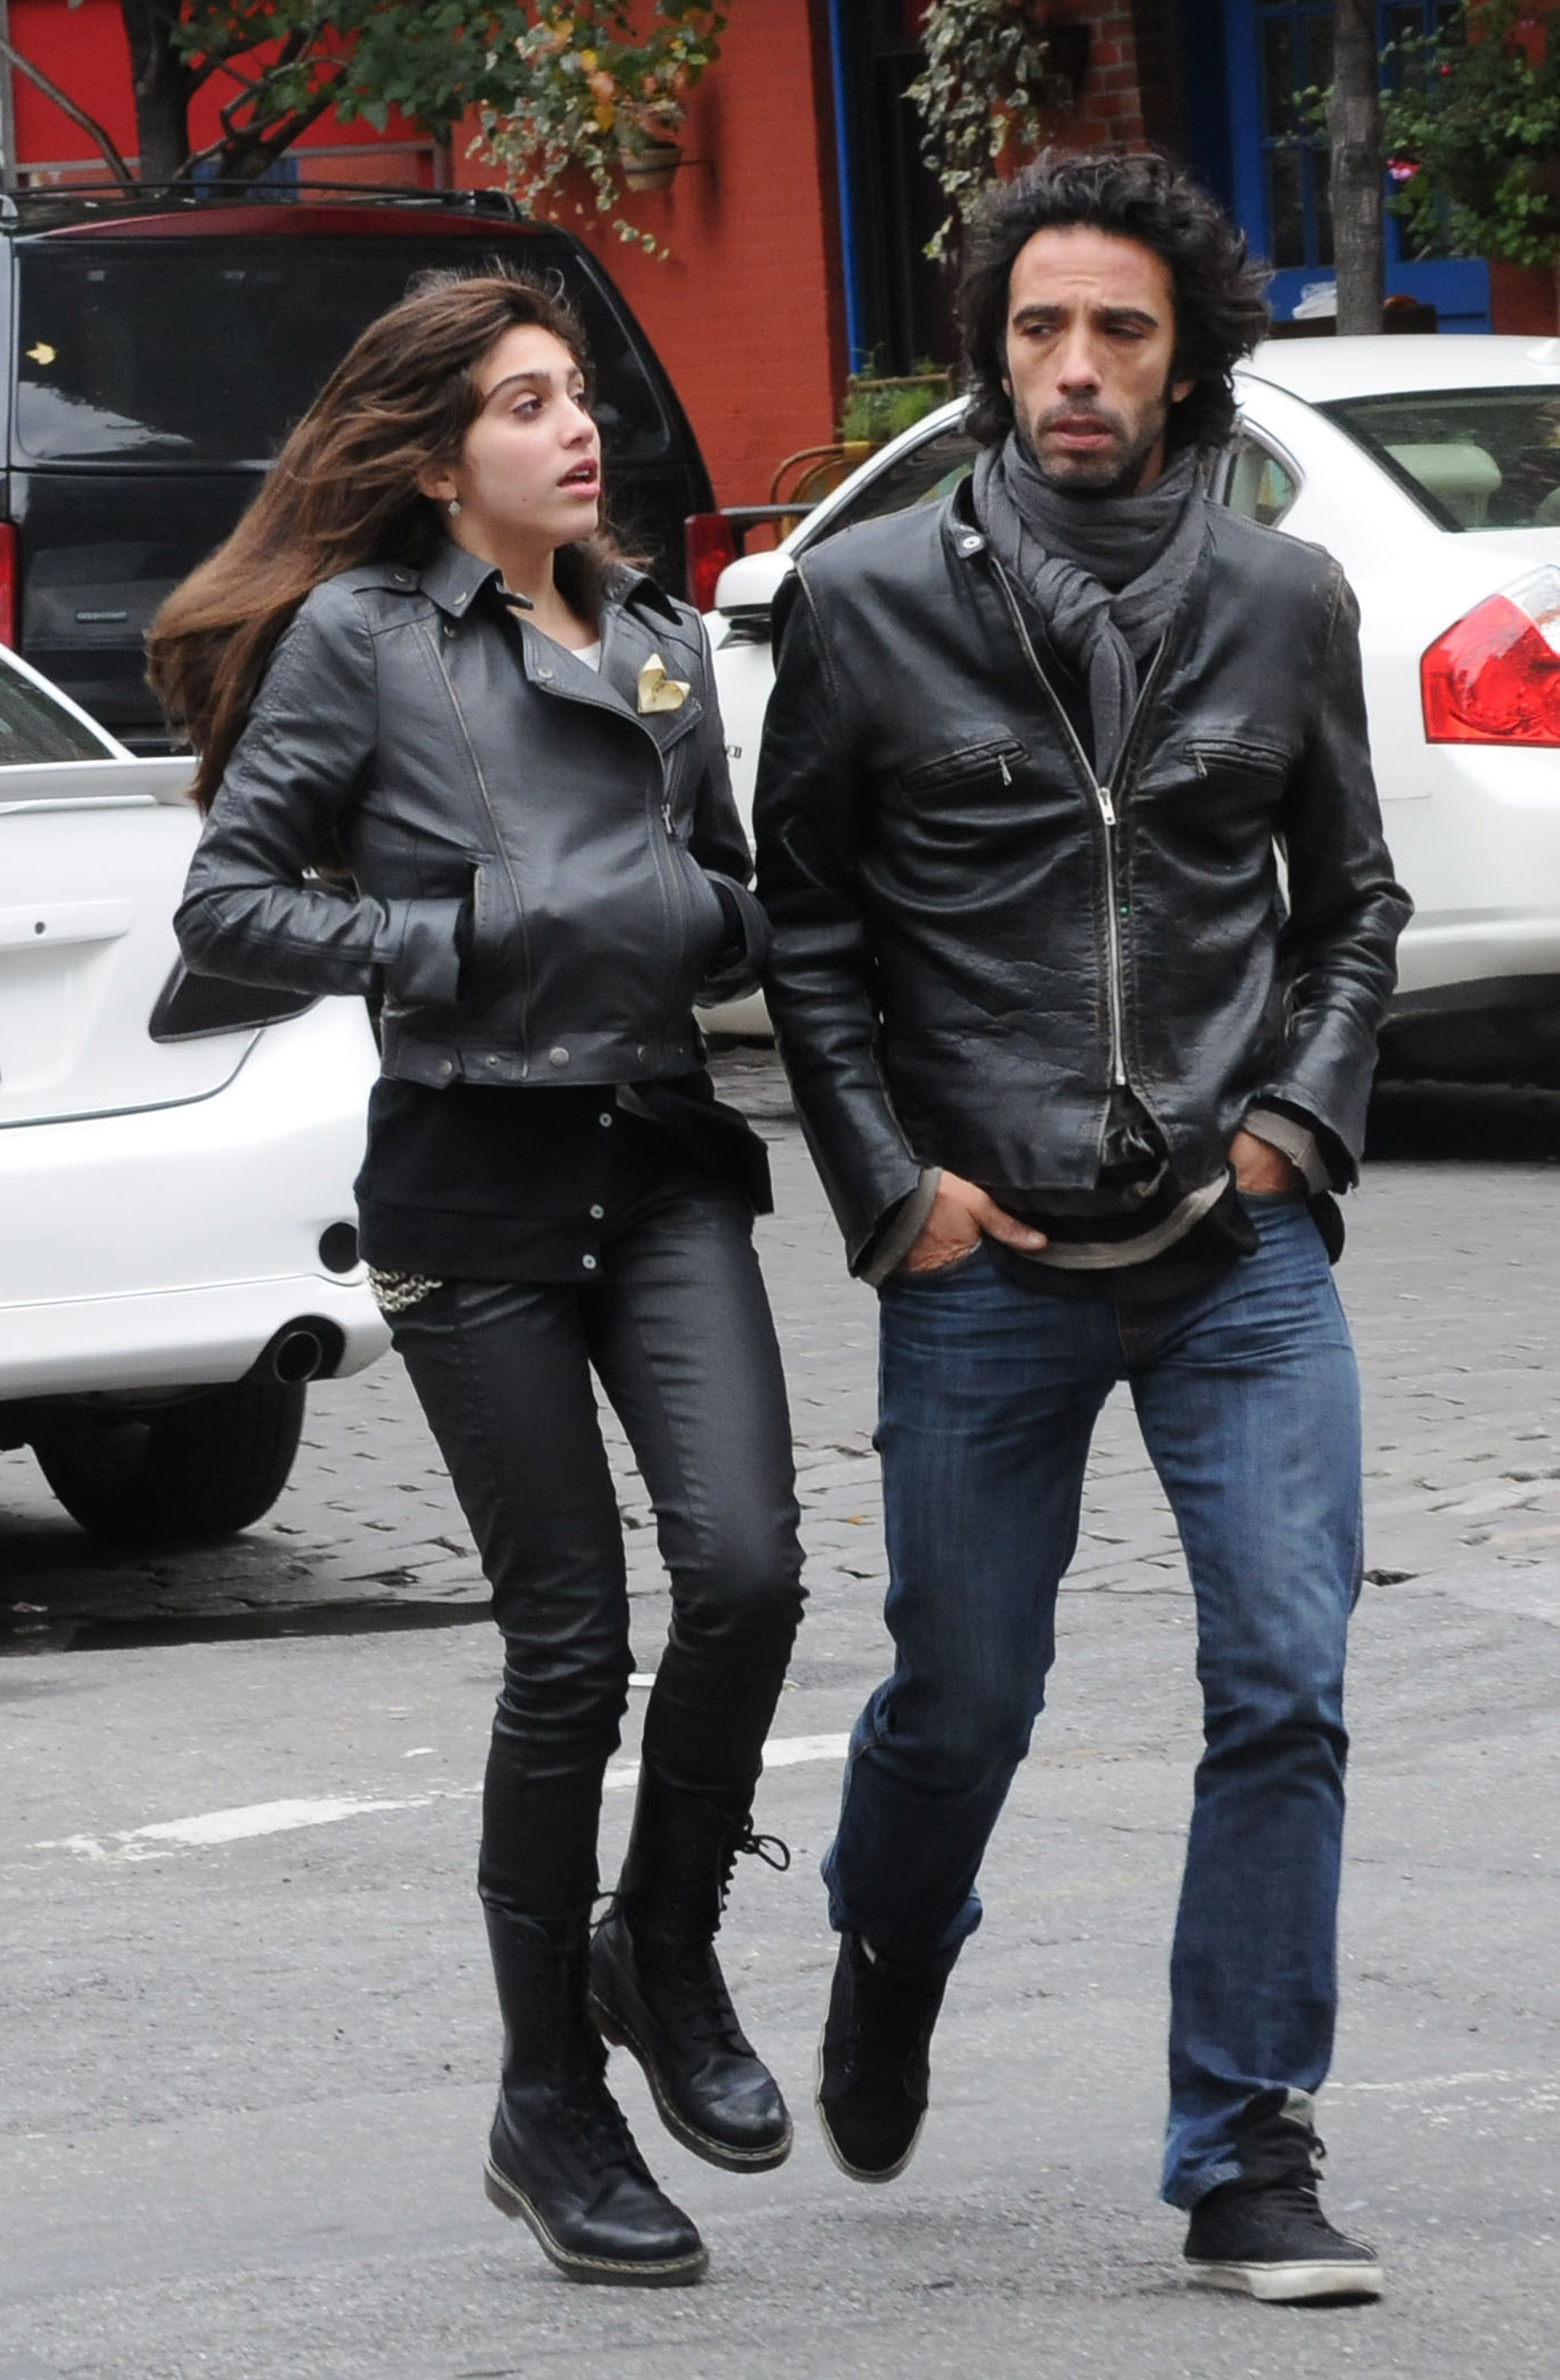 Carlos León y Lourdes León pasean por Nueva York el 1 de noviembre de 2009 | Fuente: Getty Images